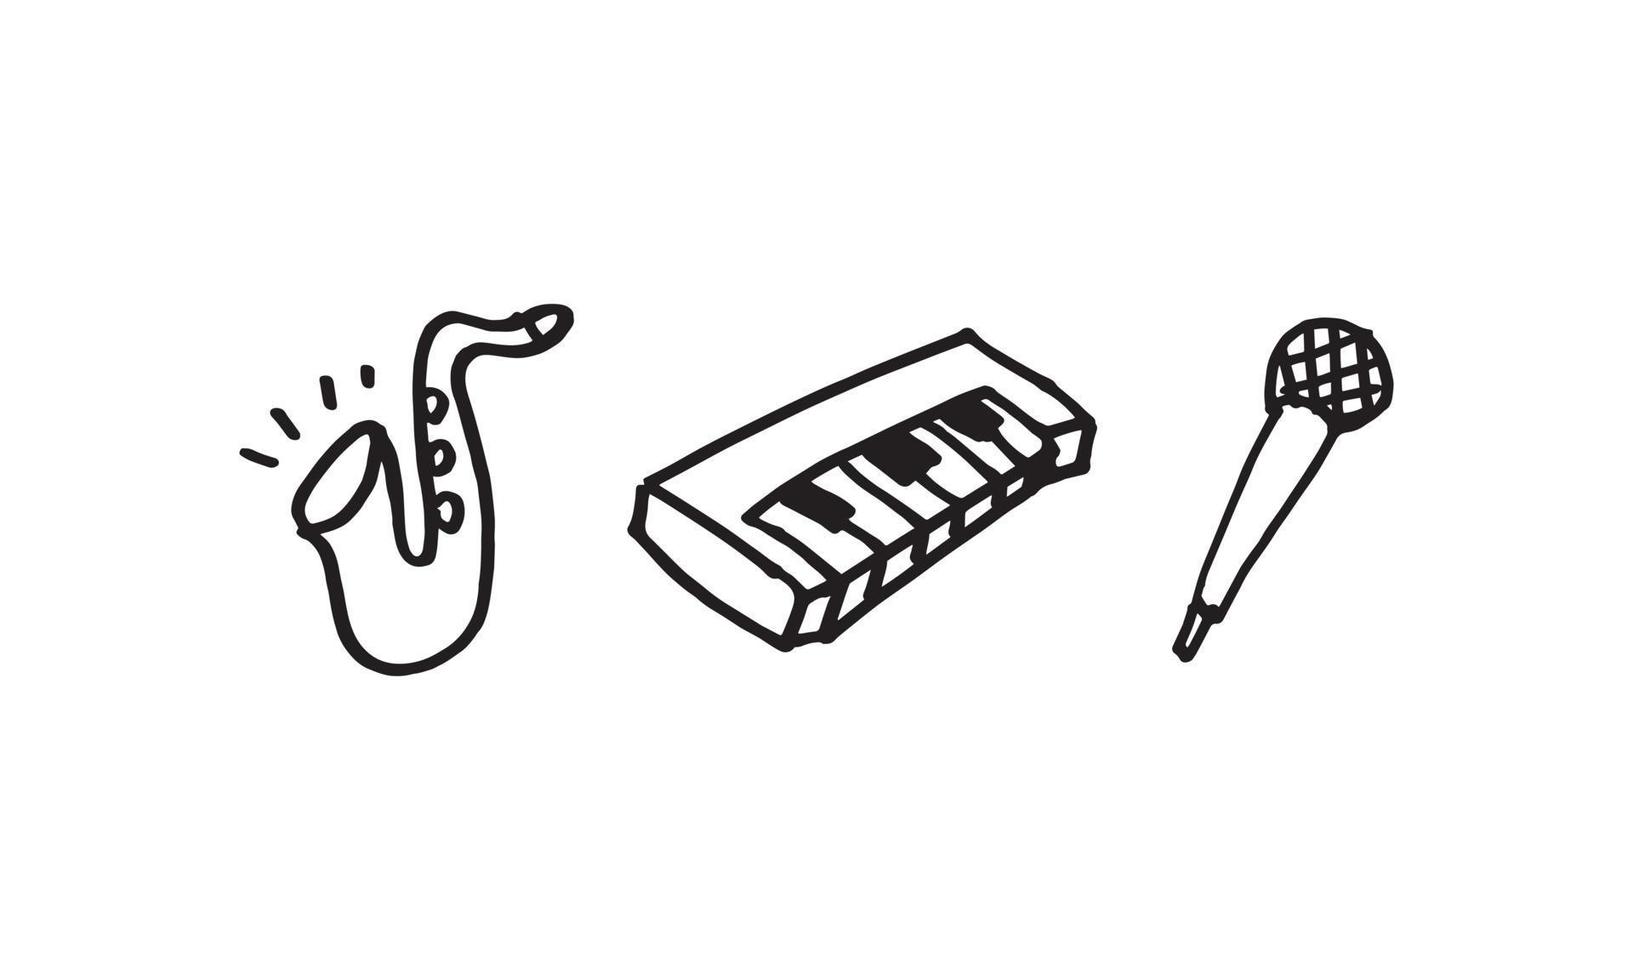 una ilustración dibujada a mano de instrumentos y equipos musicales. saxofón, teclado y micrófono. Ilustración de icono de doodle simple en vector para decorar cualquier diseño.